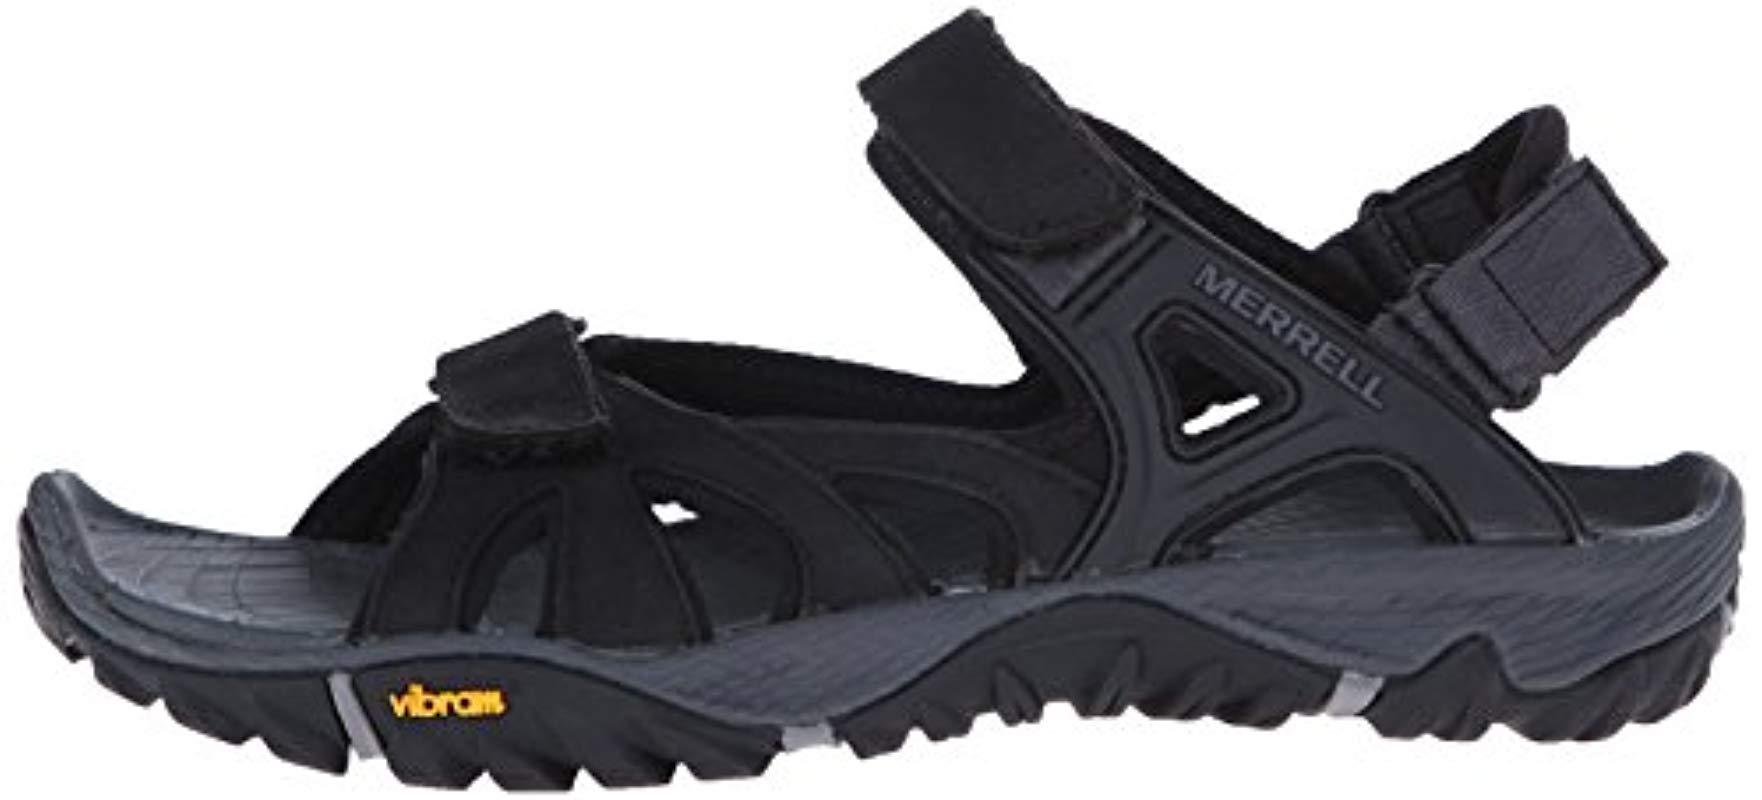 Merrell Neoprene All Out Blaze Sieve Convert Hiking Sandals Black for Men - Lyst